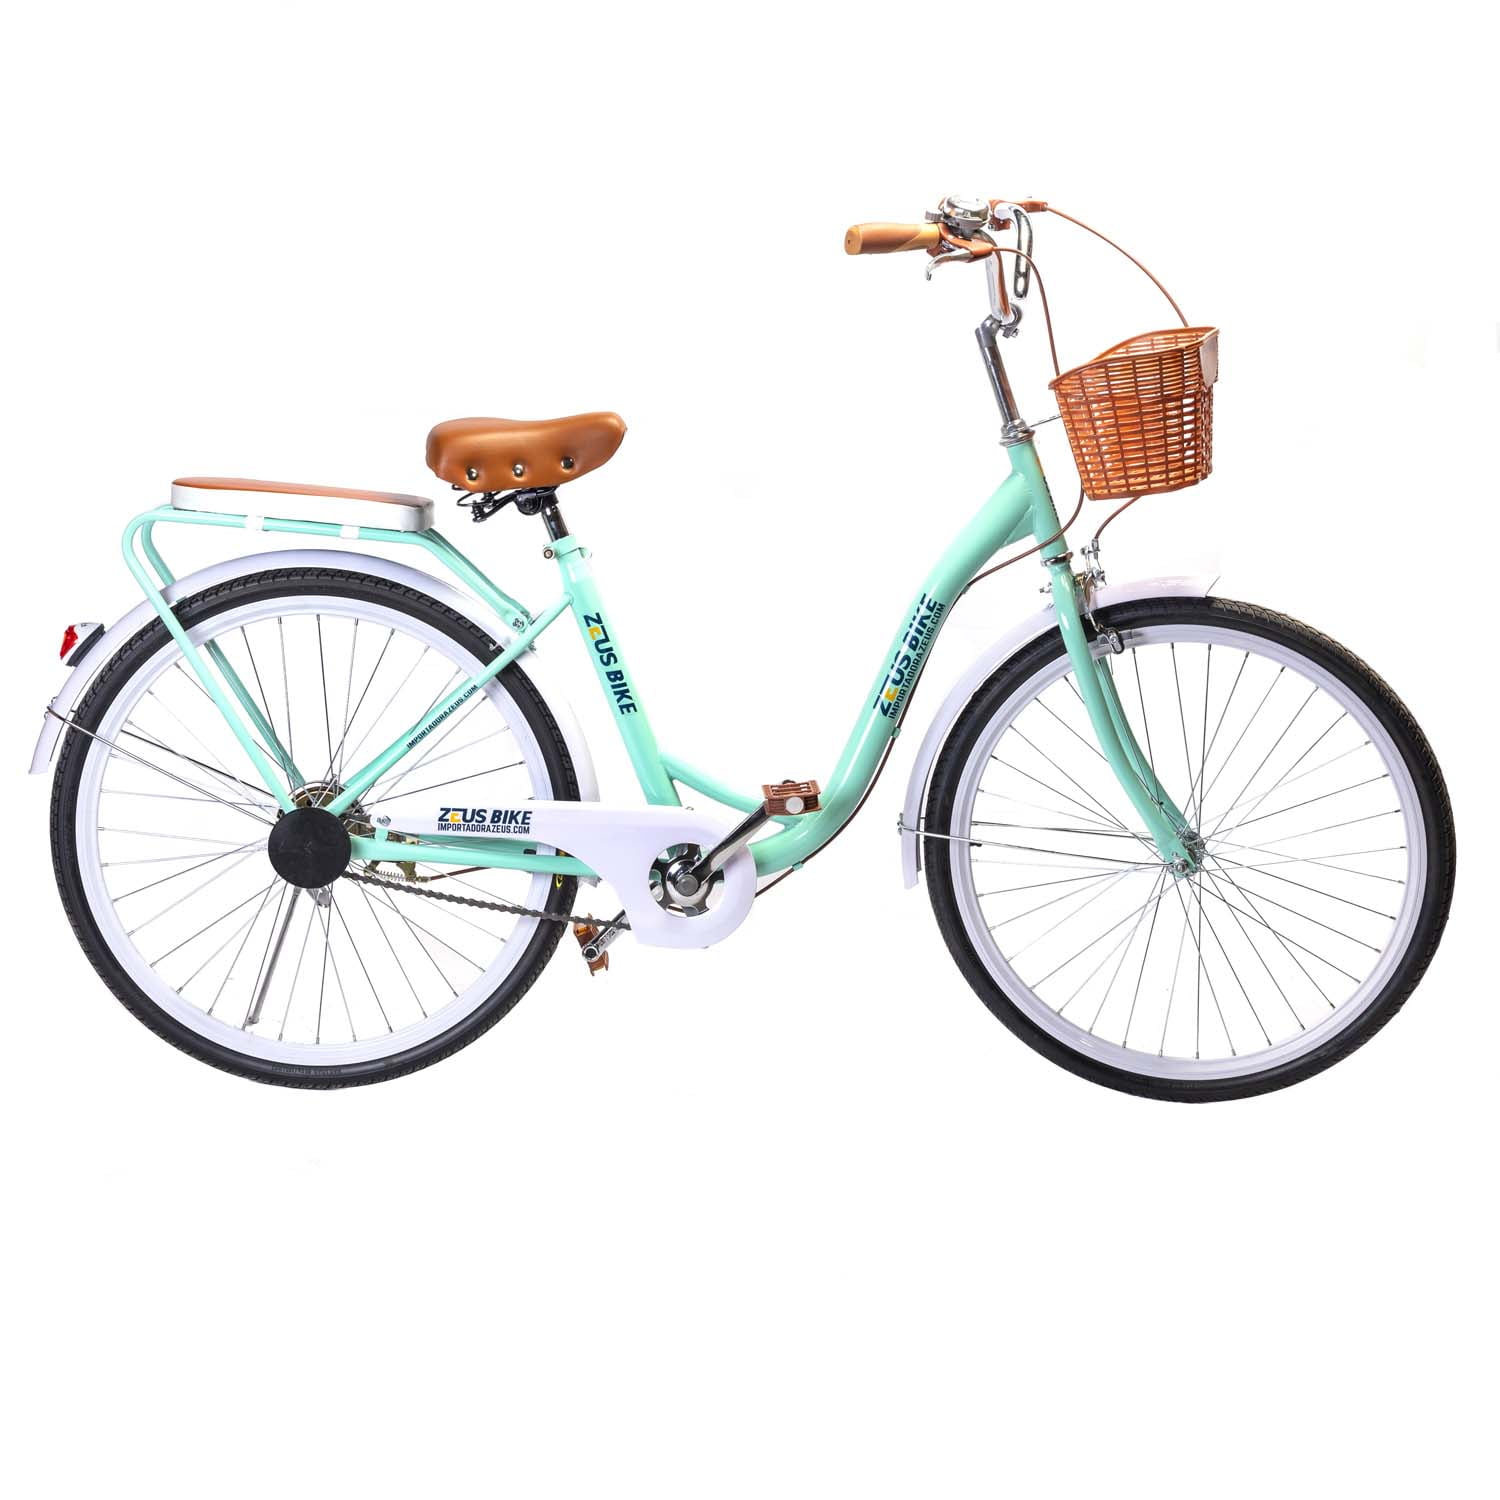 Bicicleta de Paseo Mujer Vintage aro 26 Verde - Importadora Zeus